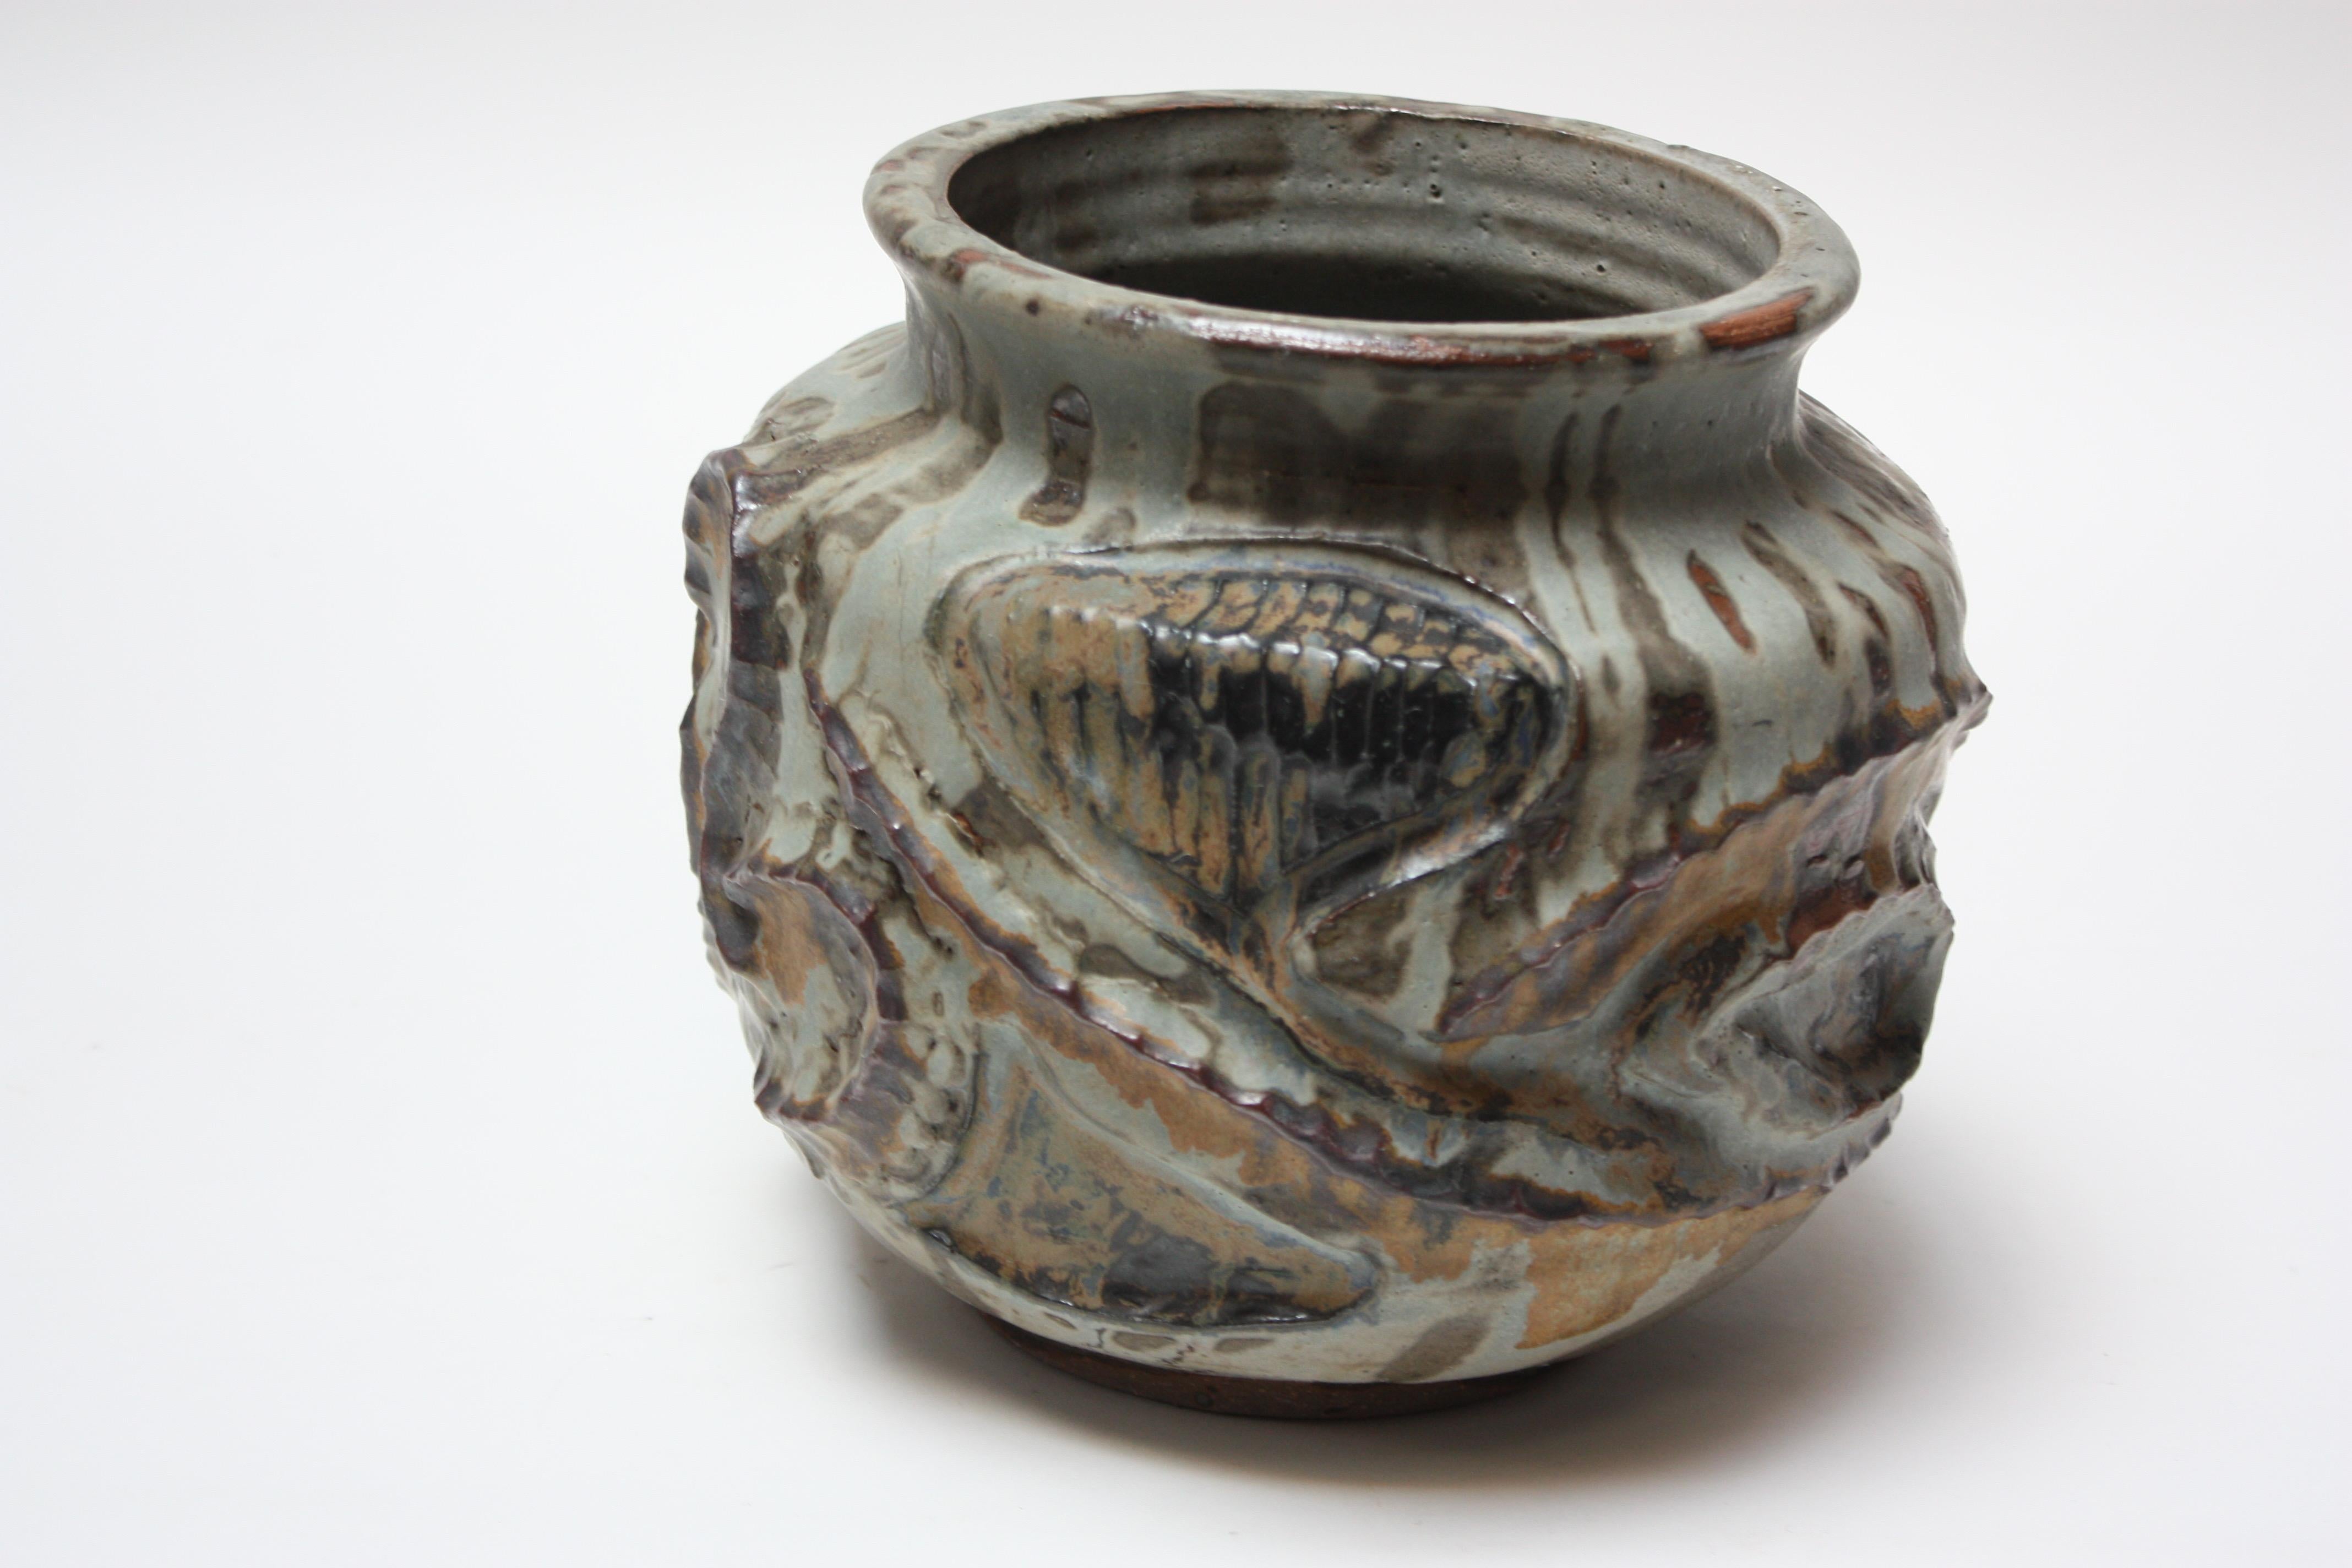 Großes, dekoratives Pflanzgefäß oder Vase aus Steingut vom englischen Keramiker David Lane's von Abington Pottery. Dieses Studio-Stück aus dem Jahr 1959 stammt aus der Zeit vor Abington und ist großformatig (9